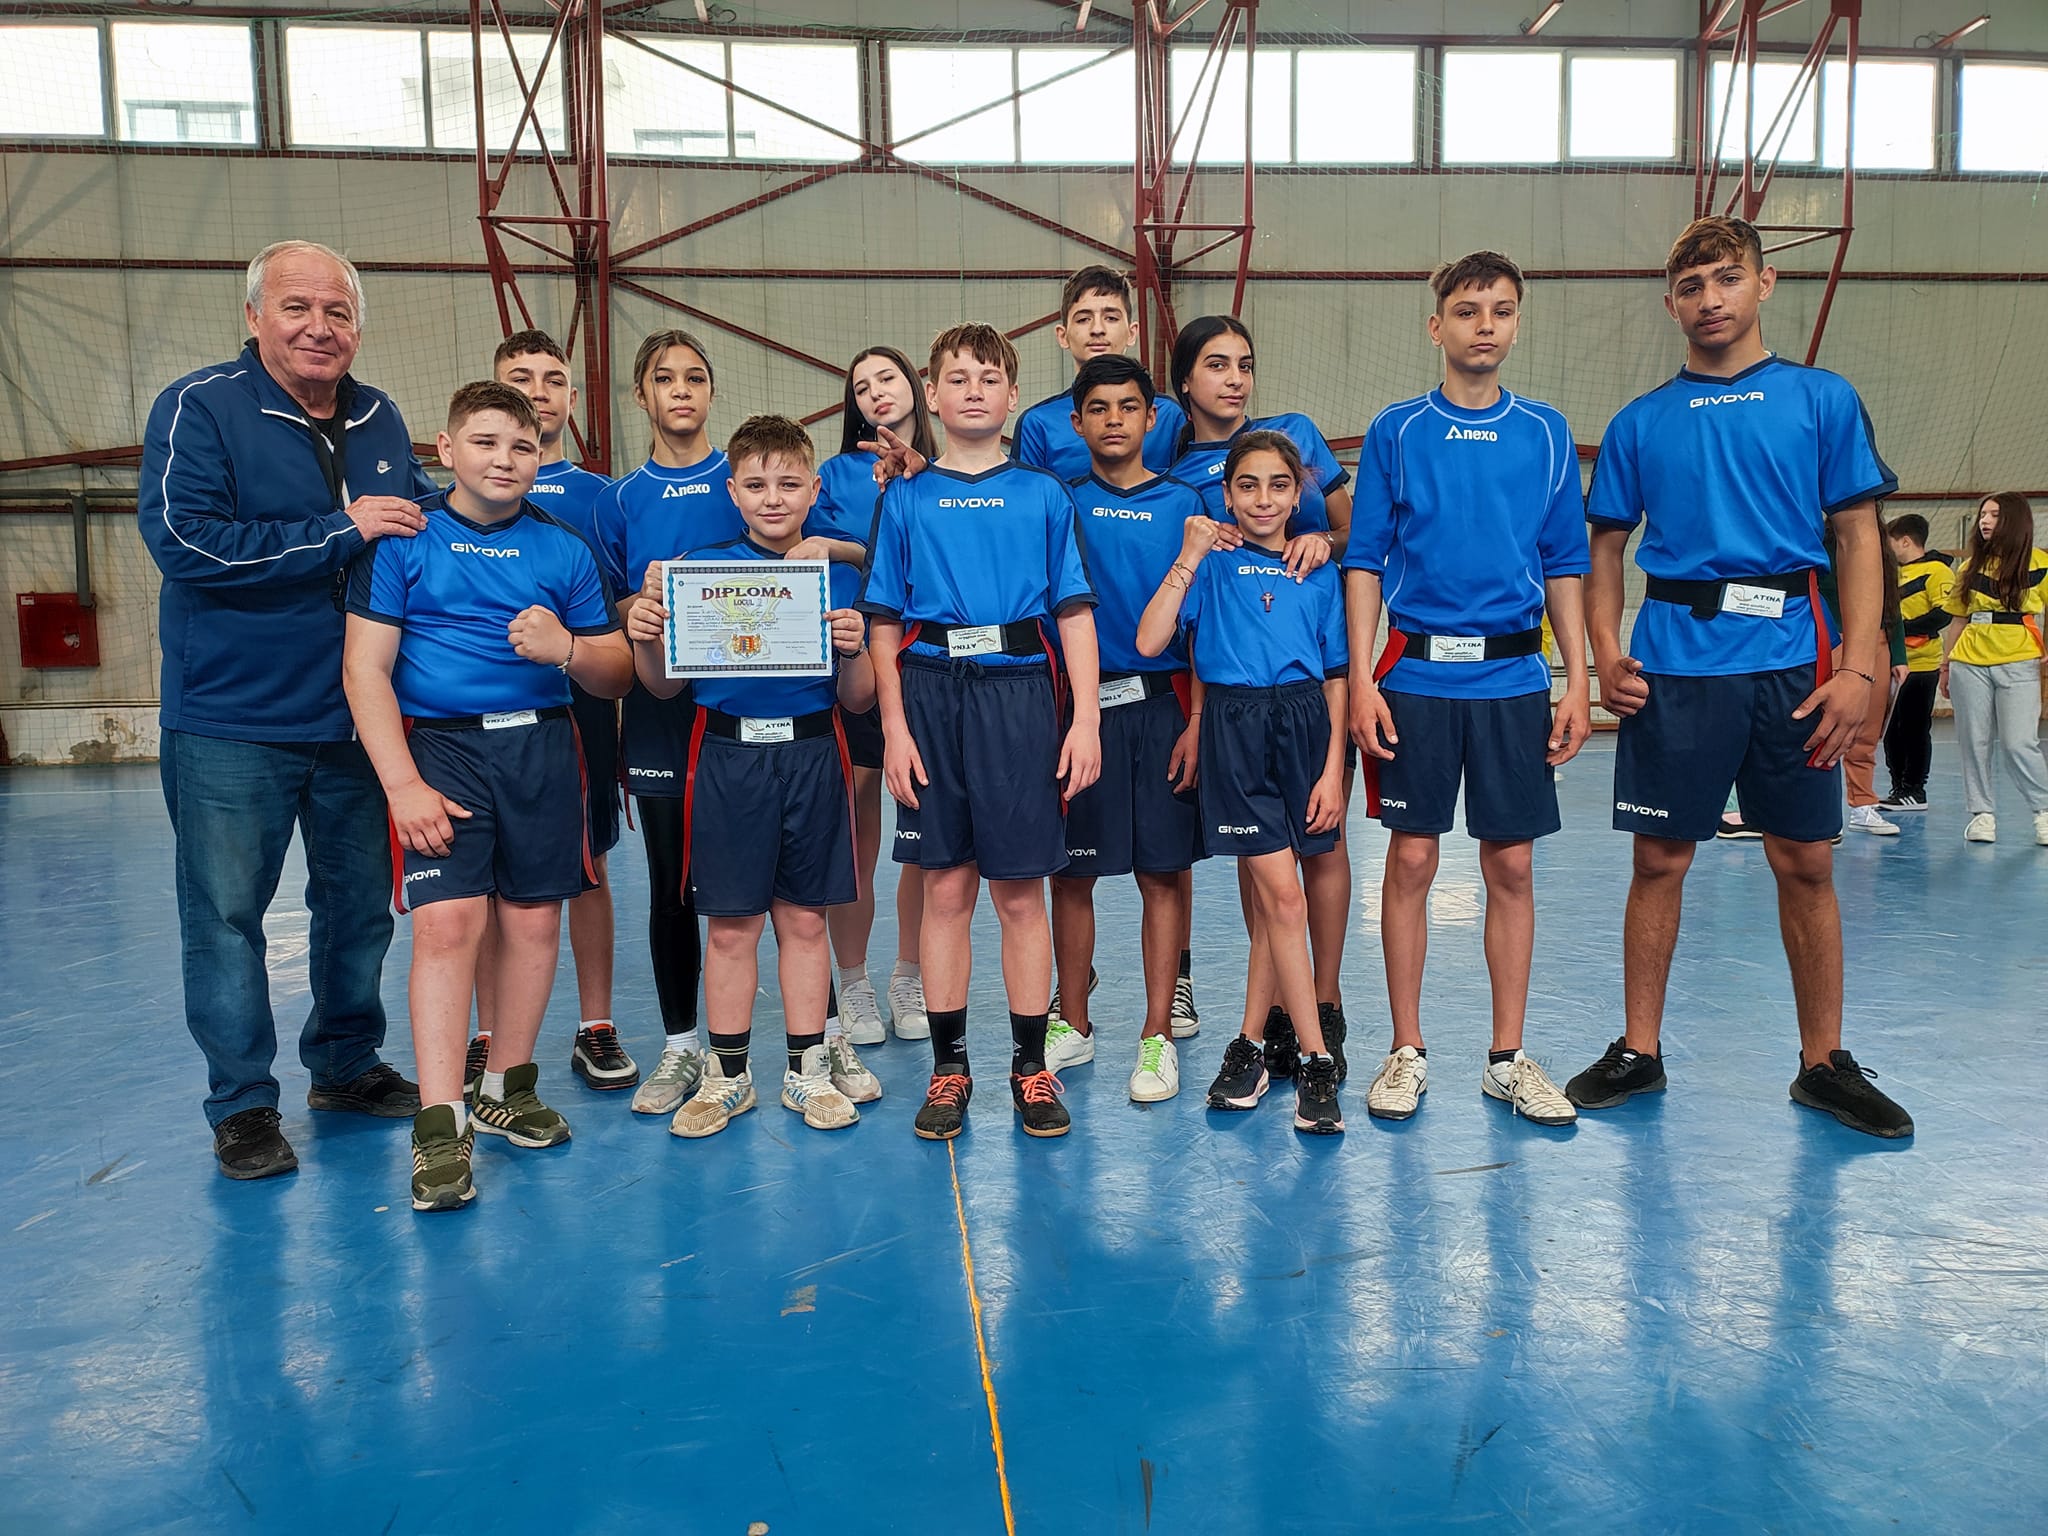 Echipa de Rugbytag a Liceului Tehnologic “Constantin Filipescu”, locul 1 la Olimpiada Naţională a Sportului Şcolar-etapa judeţeană